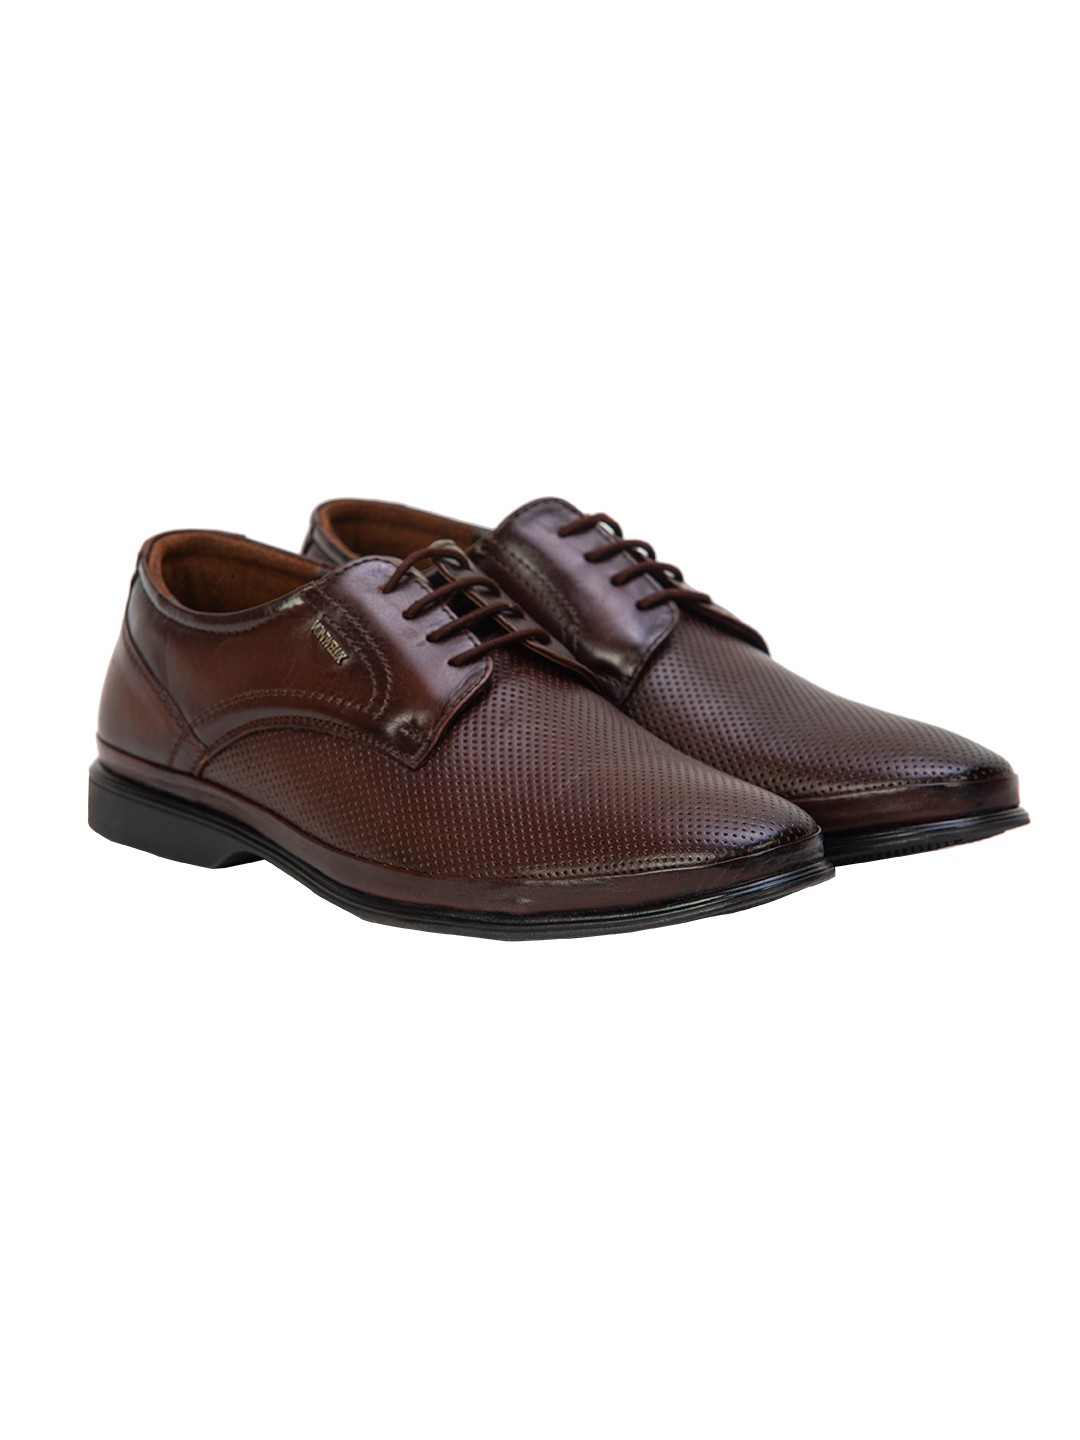 Buy Von Wellx Germany Comfort Coen Brown Shoes Online in Salalah